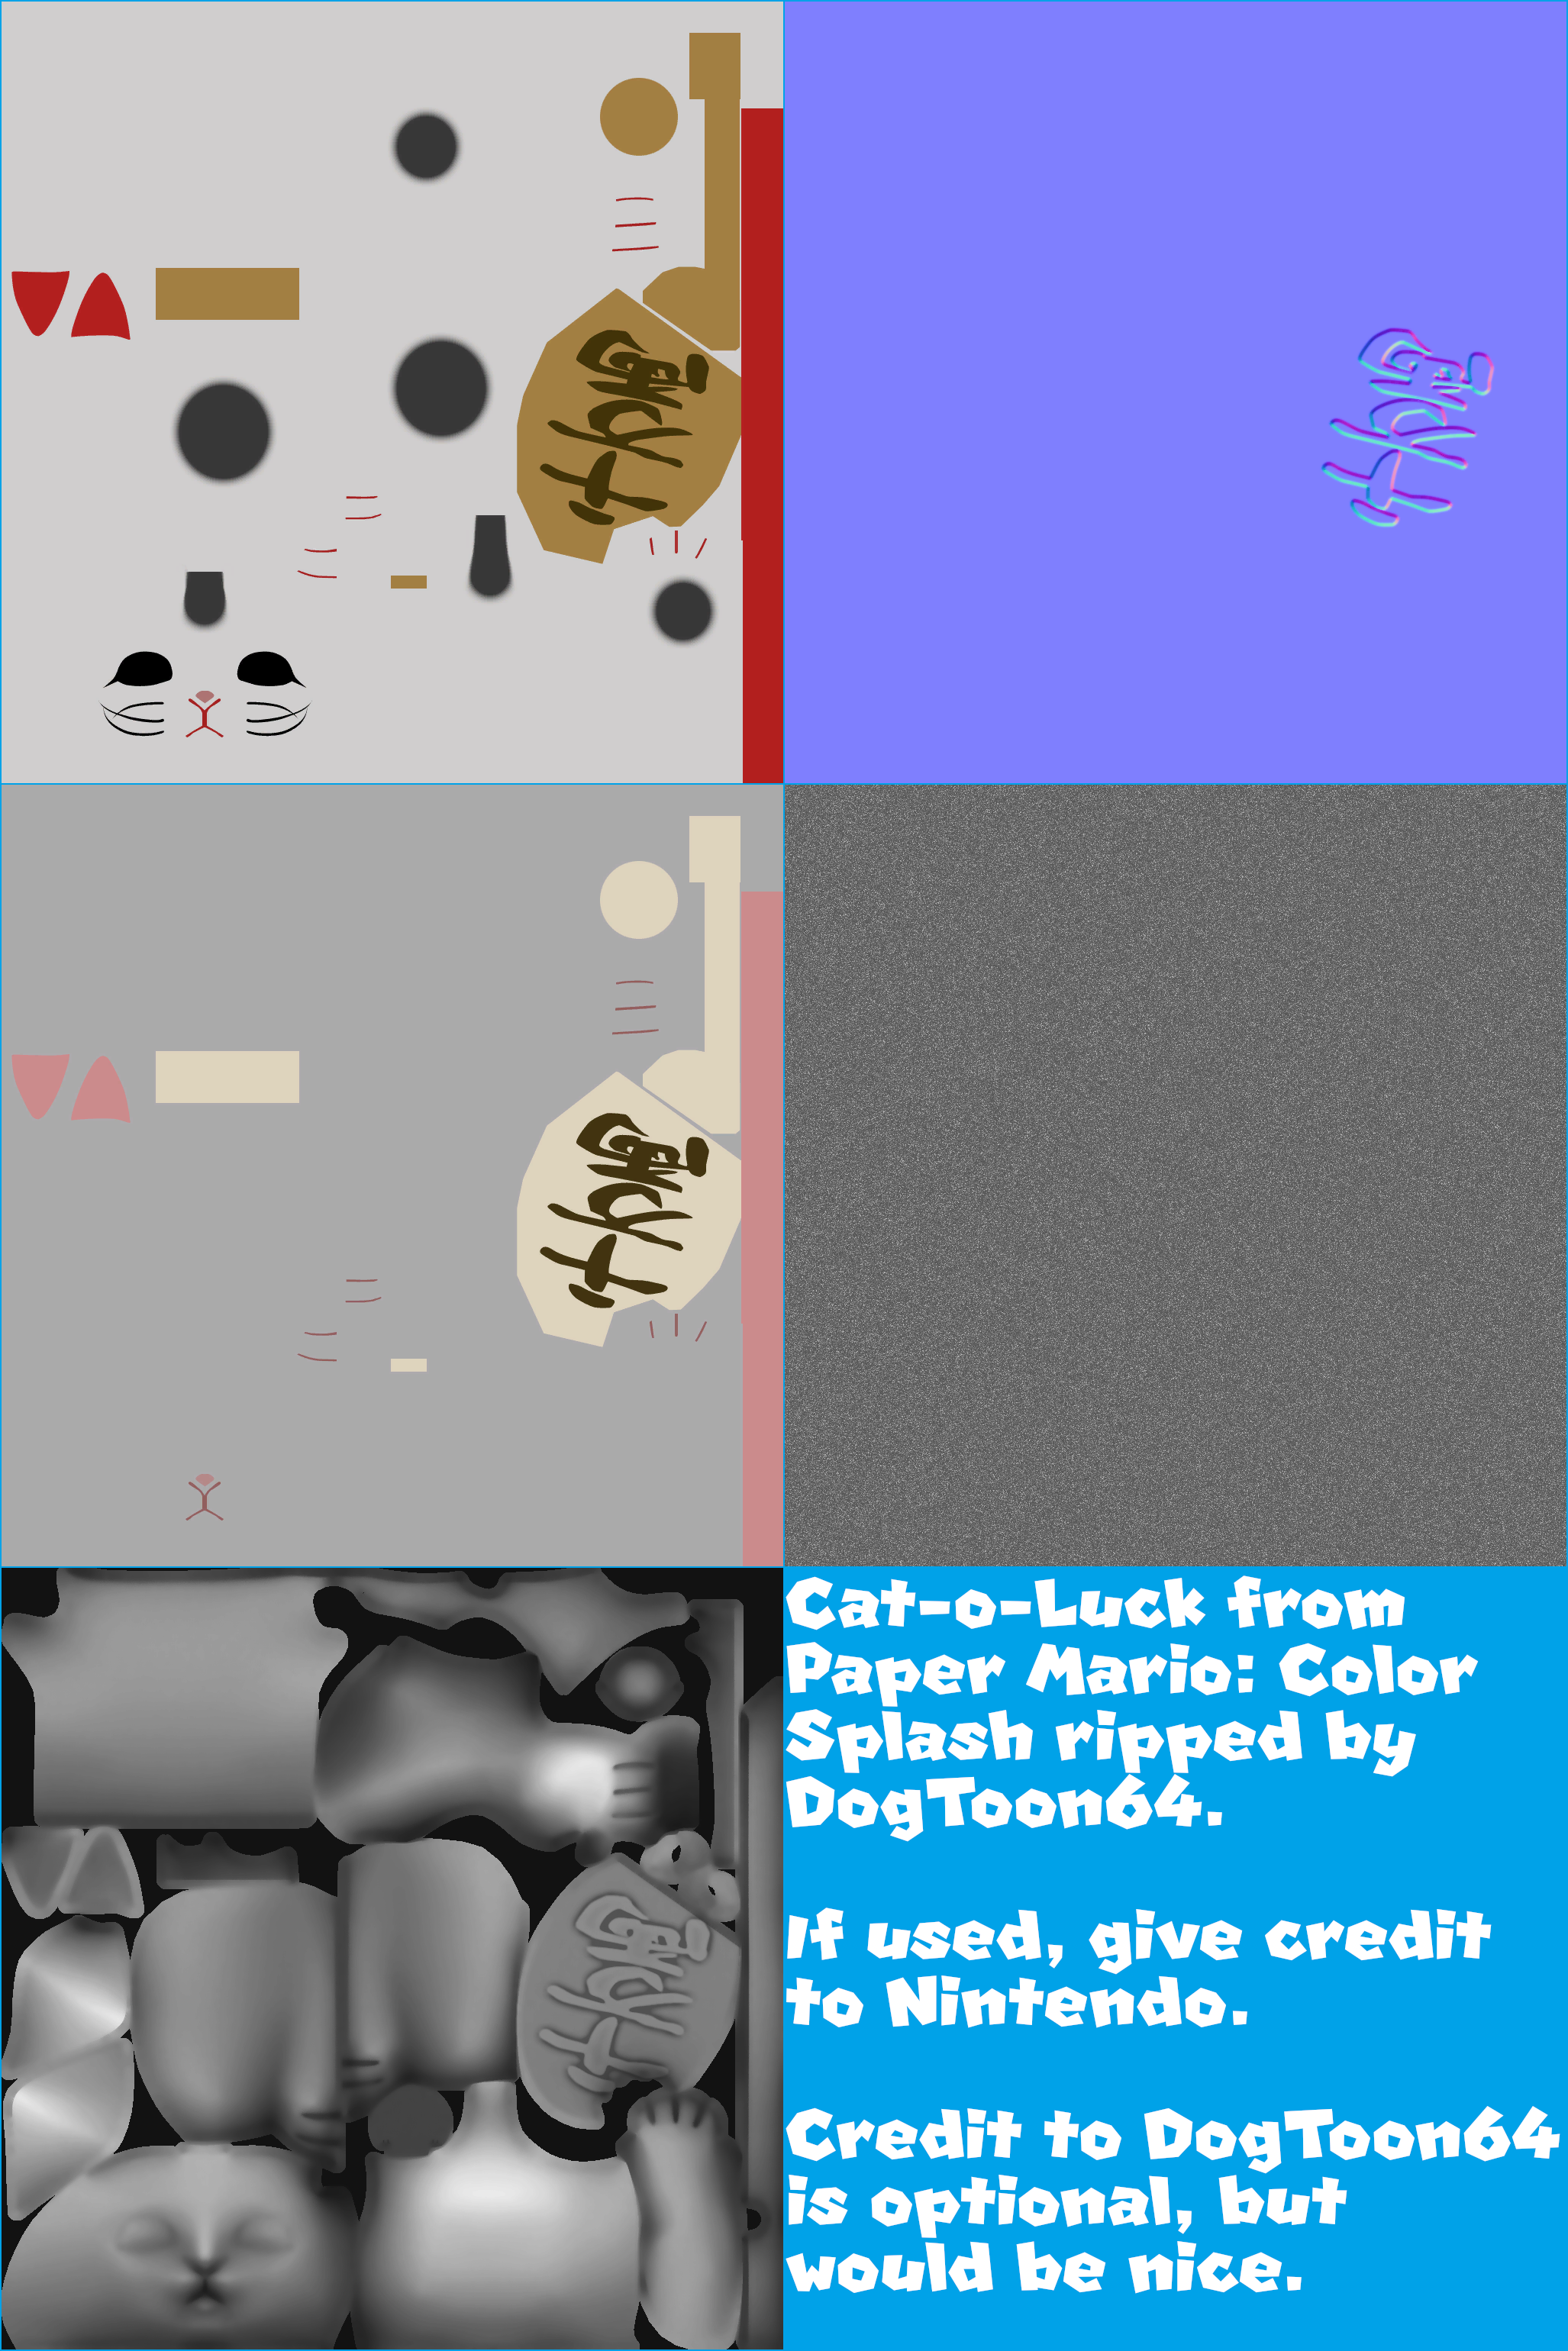 Paper Mario: Color Splash - Cat-o-Luck